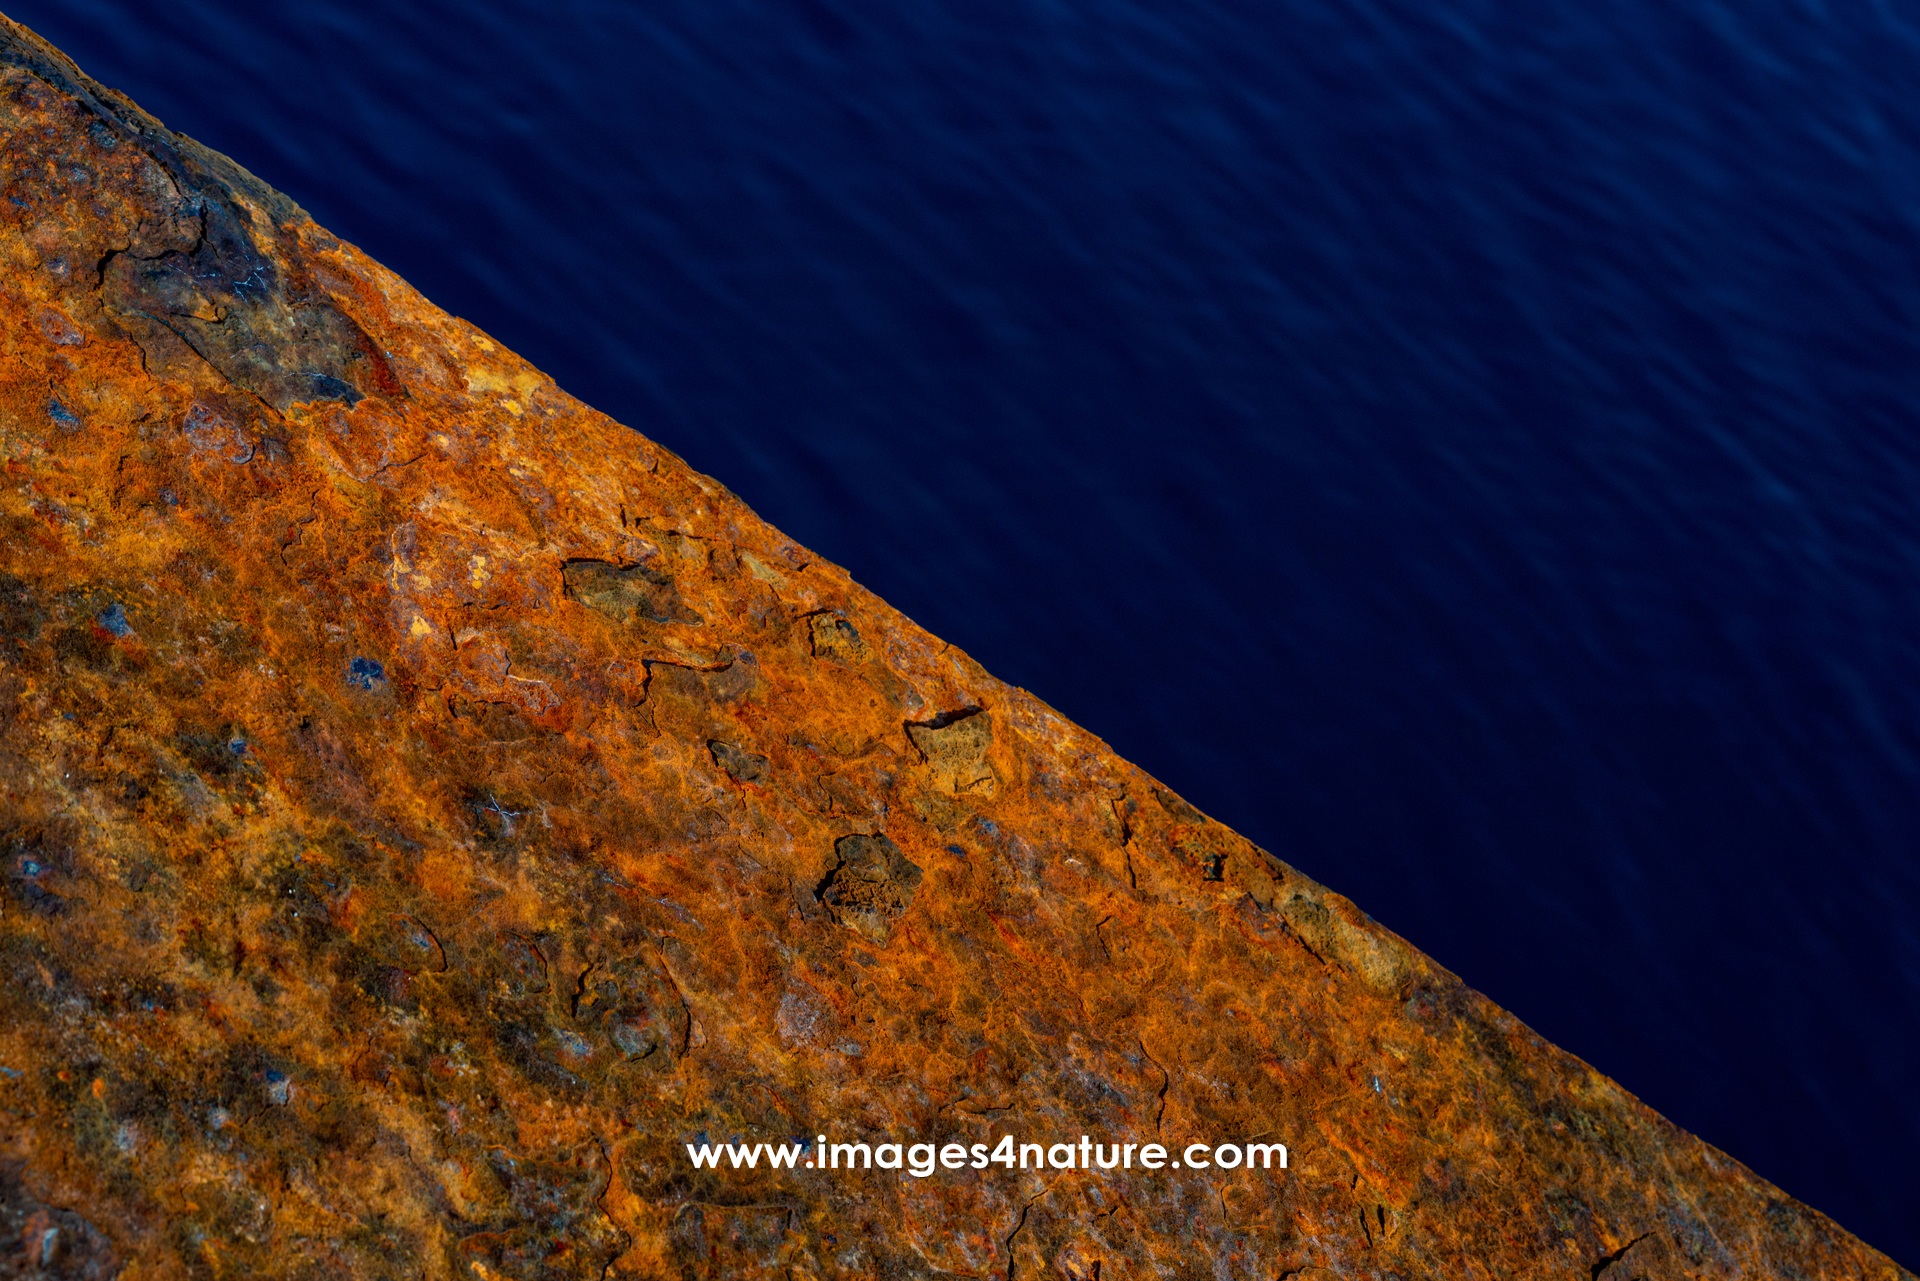 Diagonal close-up of rusted metal against dark blue water